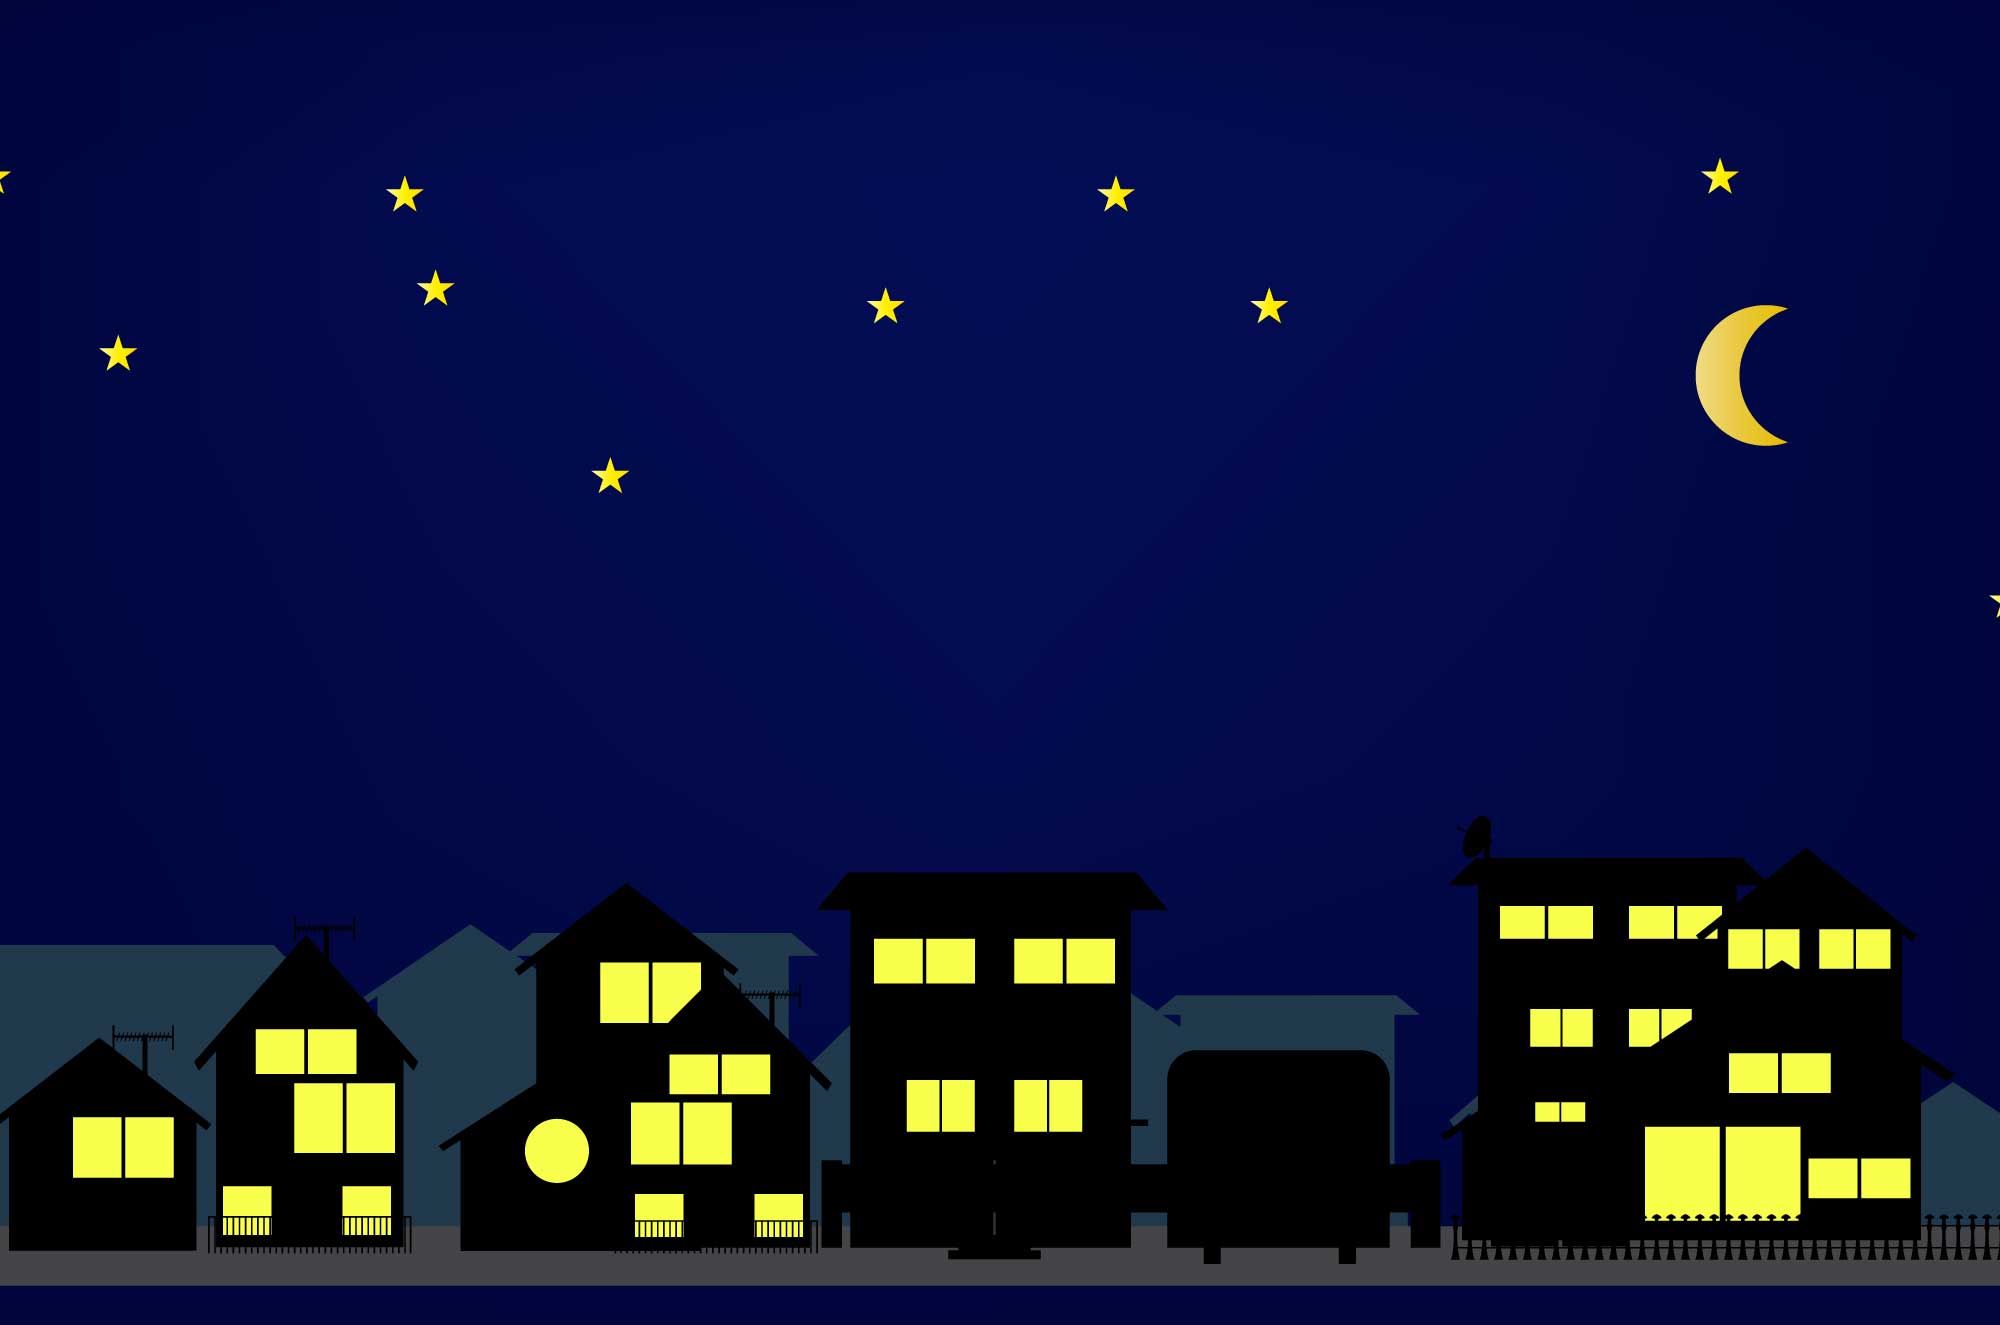 星の出る深夜の住宅街のフリーイラスト素材 チコデザ